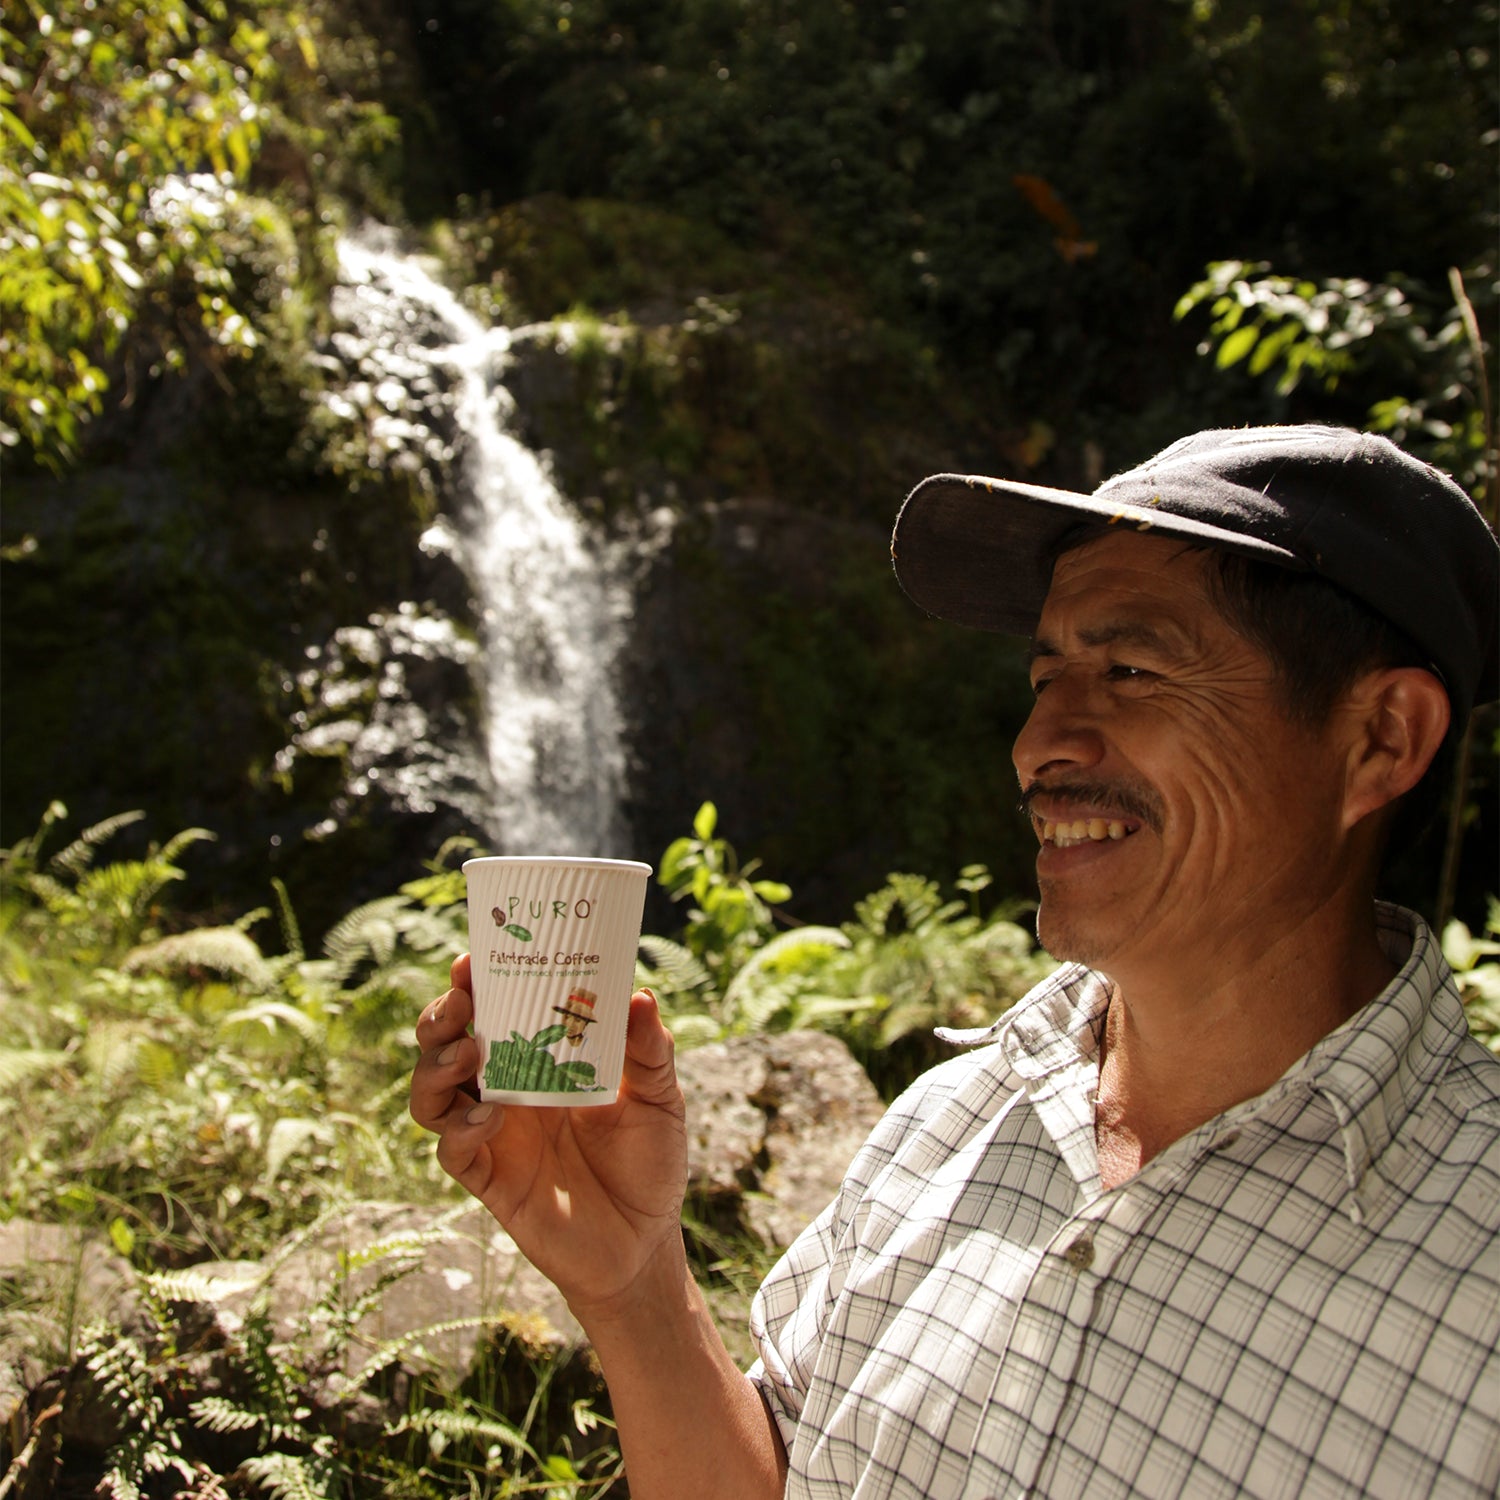 Puro kaffe kop med fokus på bæredygtighed